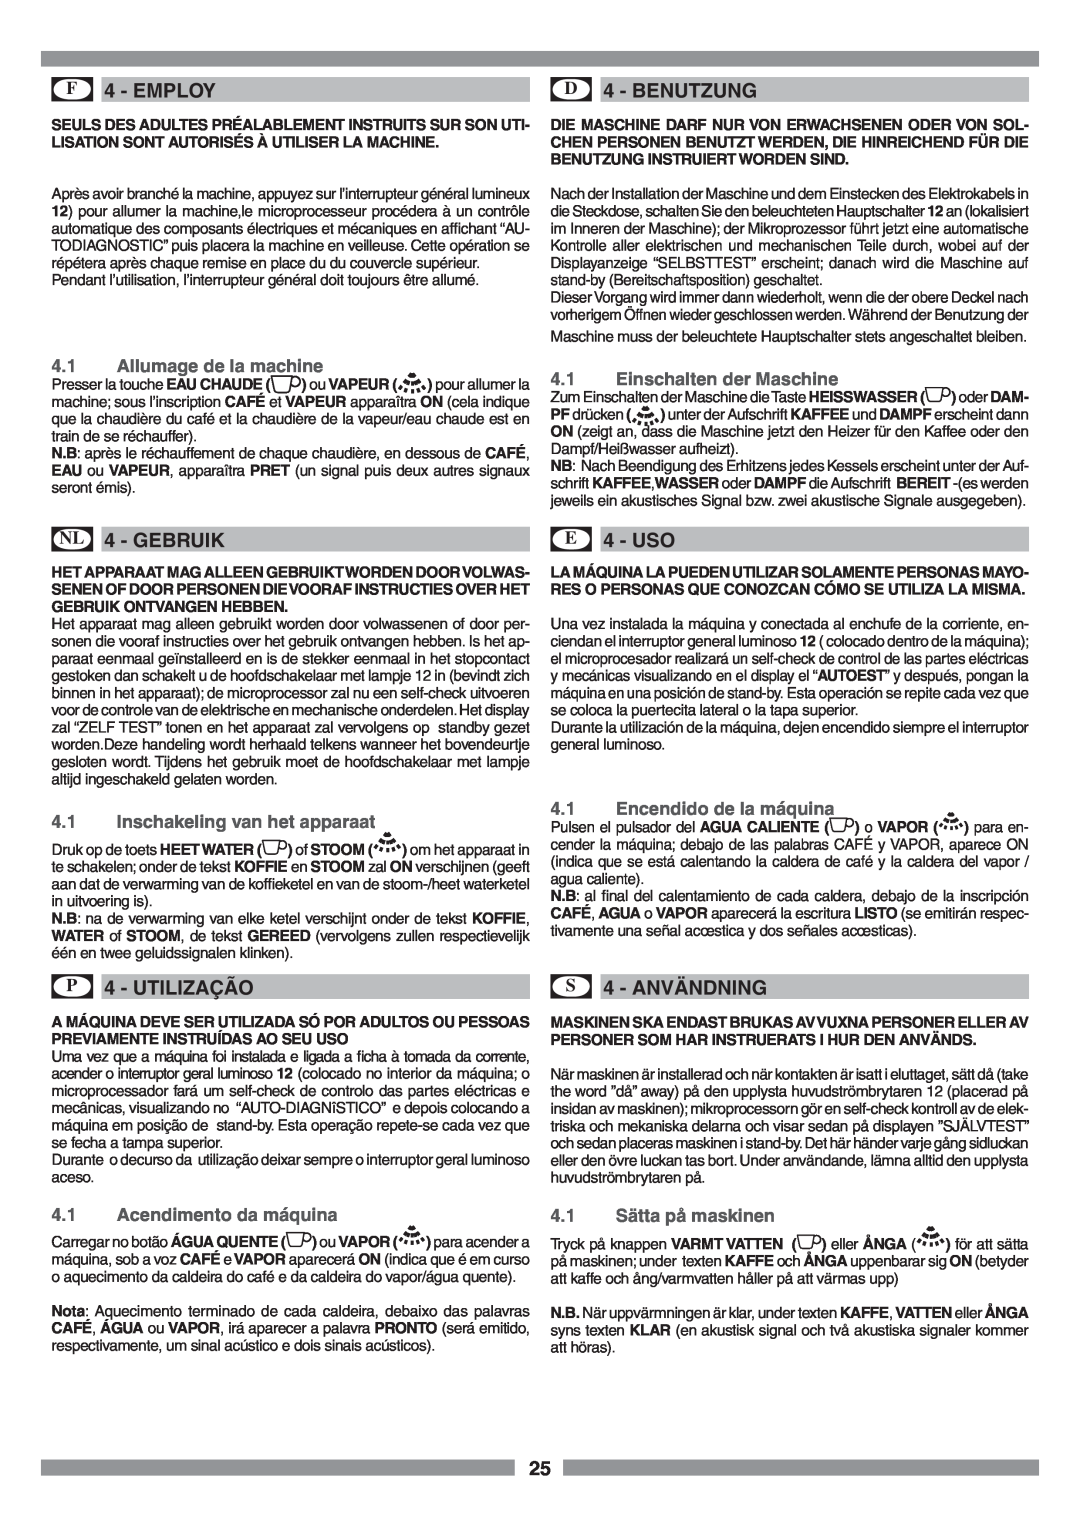 Smeg SCM1 manual F 4 - EMPLOY, D 4 - BENUTZUNG, NL 4 - GEBRUIK, E 4 - USO, P 4 - UTILIZAÇÃO, S 4 - ANVÄNDNING 